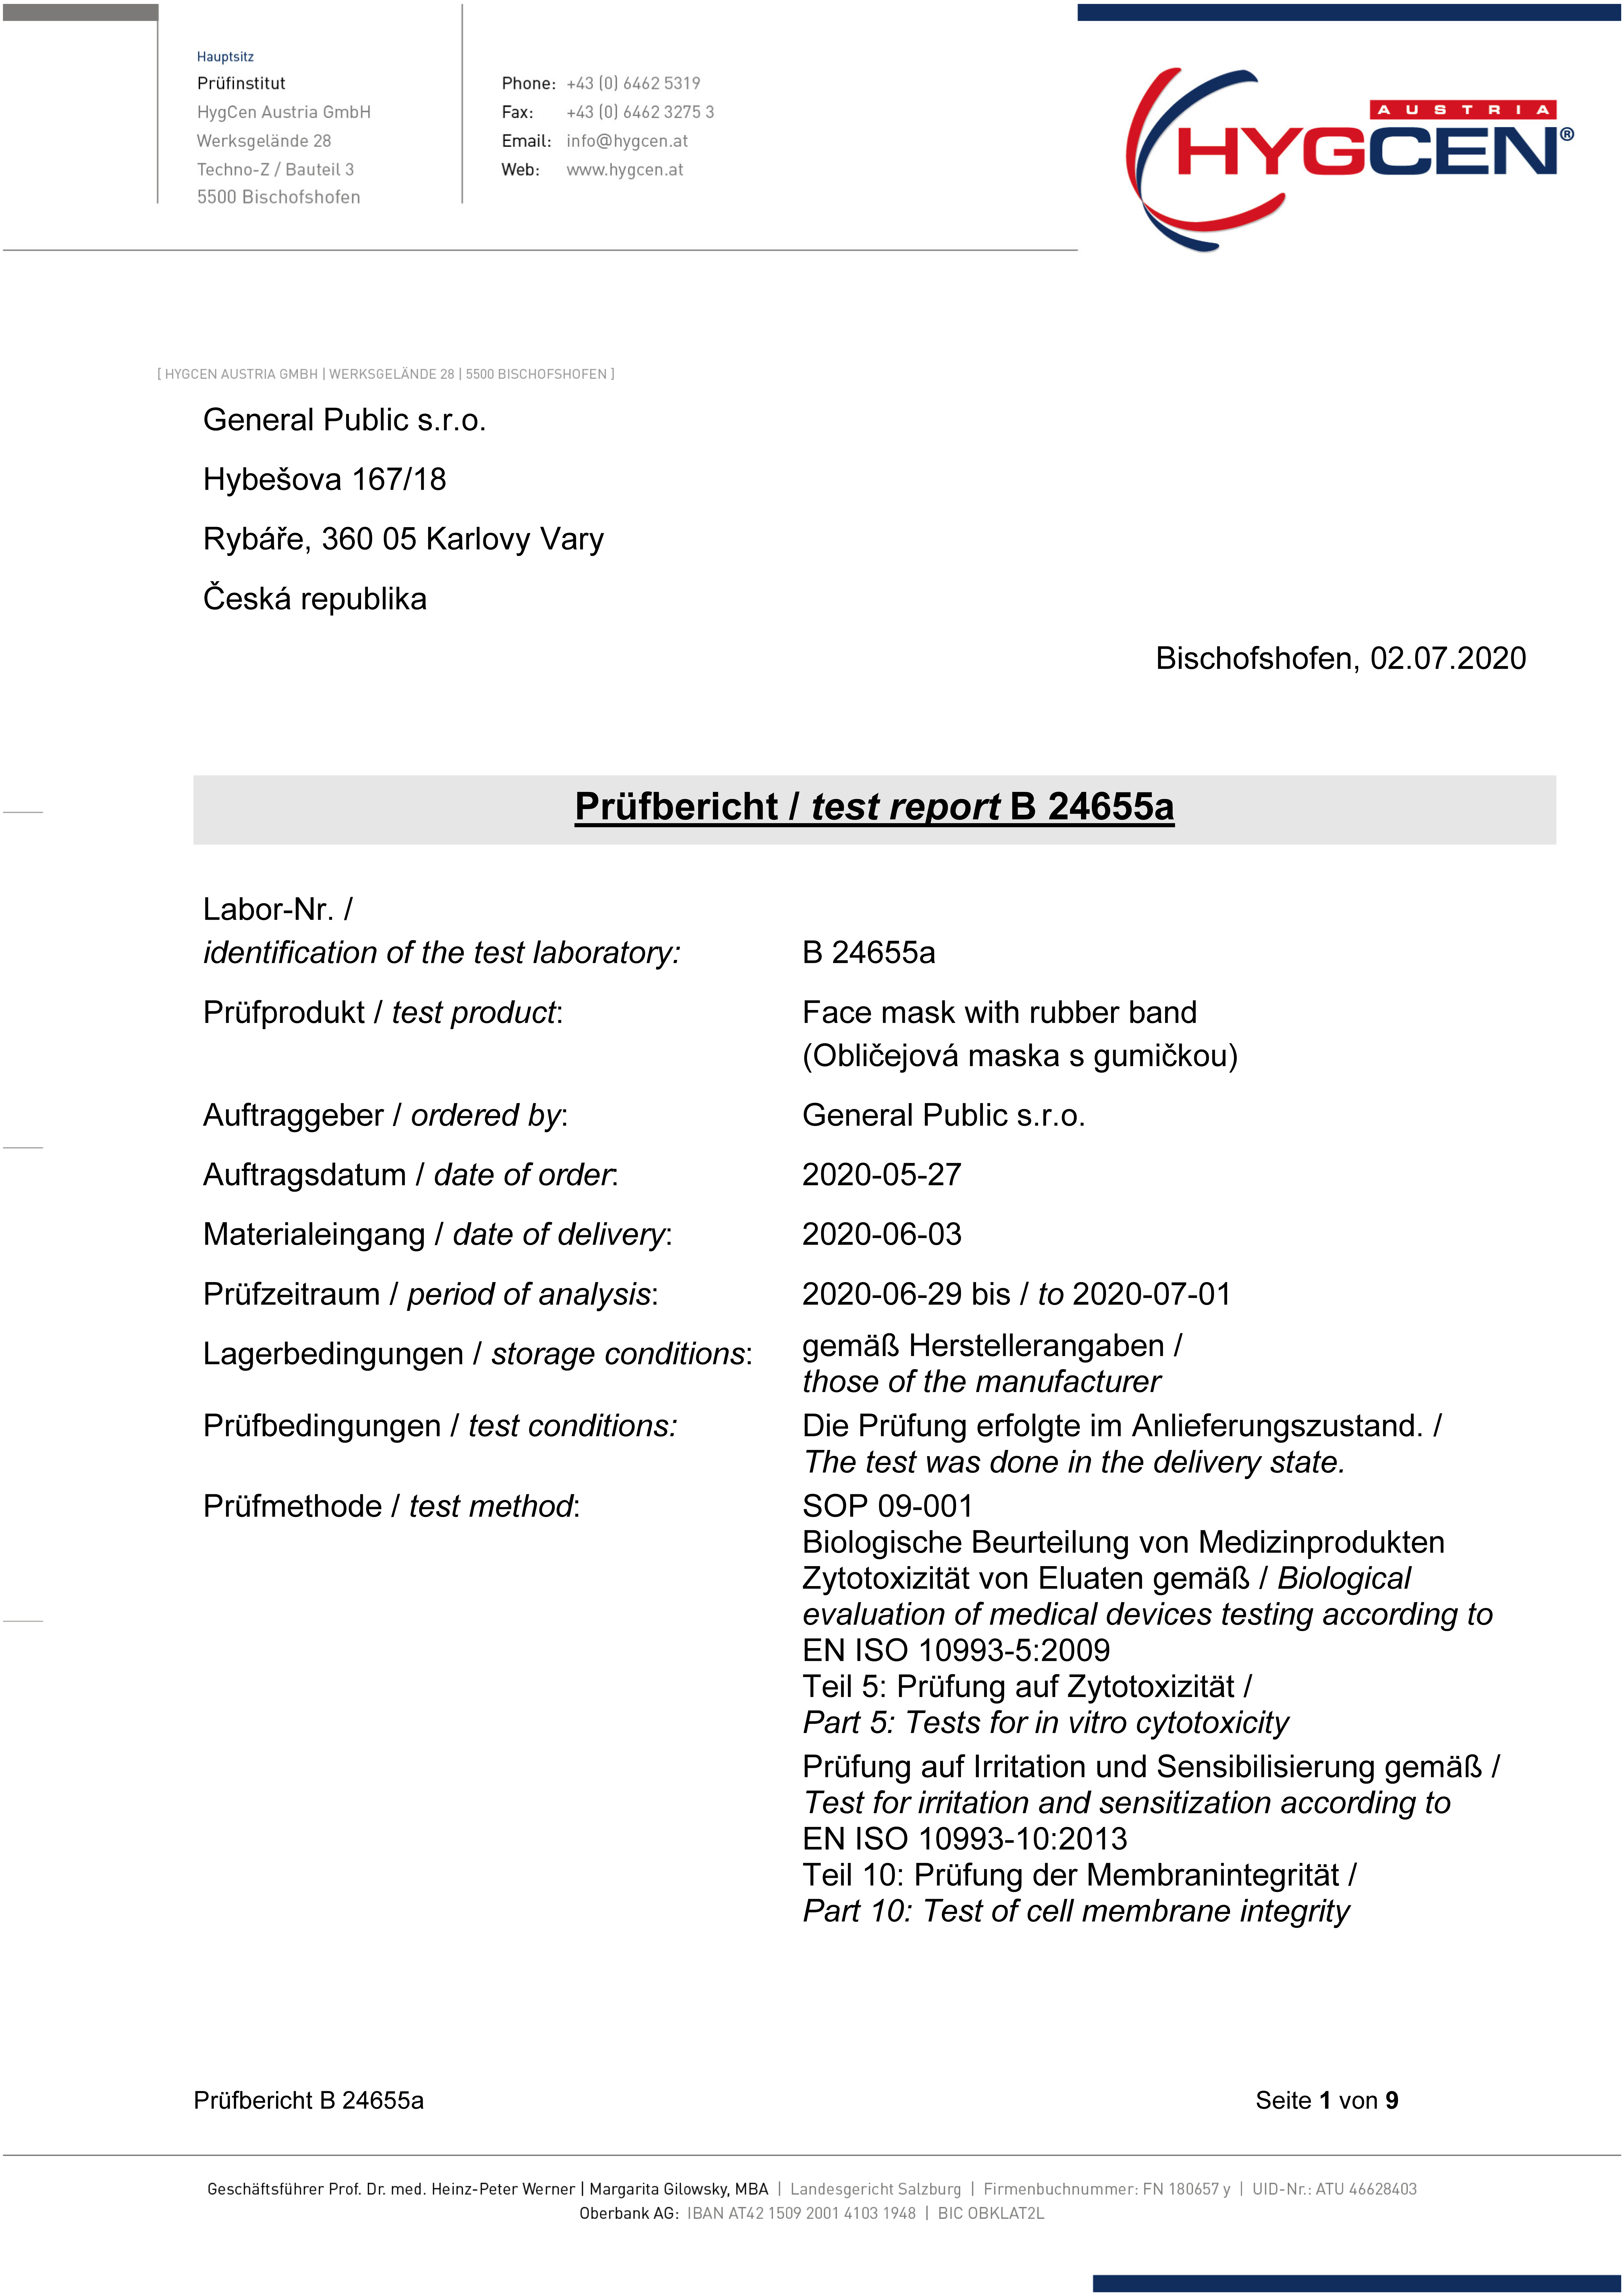 Prüfbericht B 24655a EN ISO 10993-5, EN ISO 10993-10_1